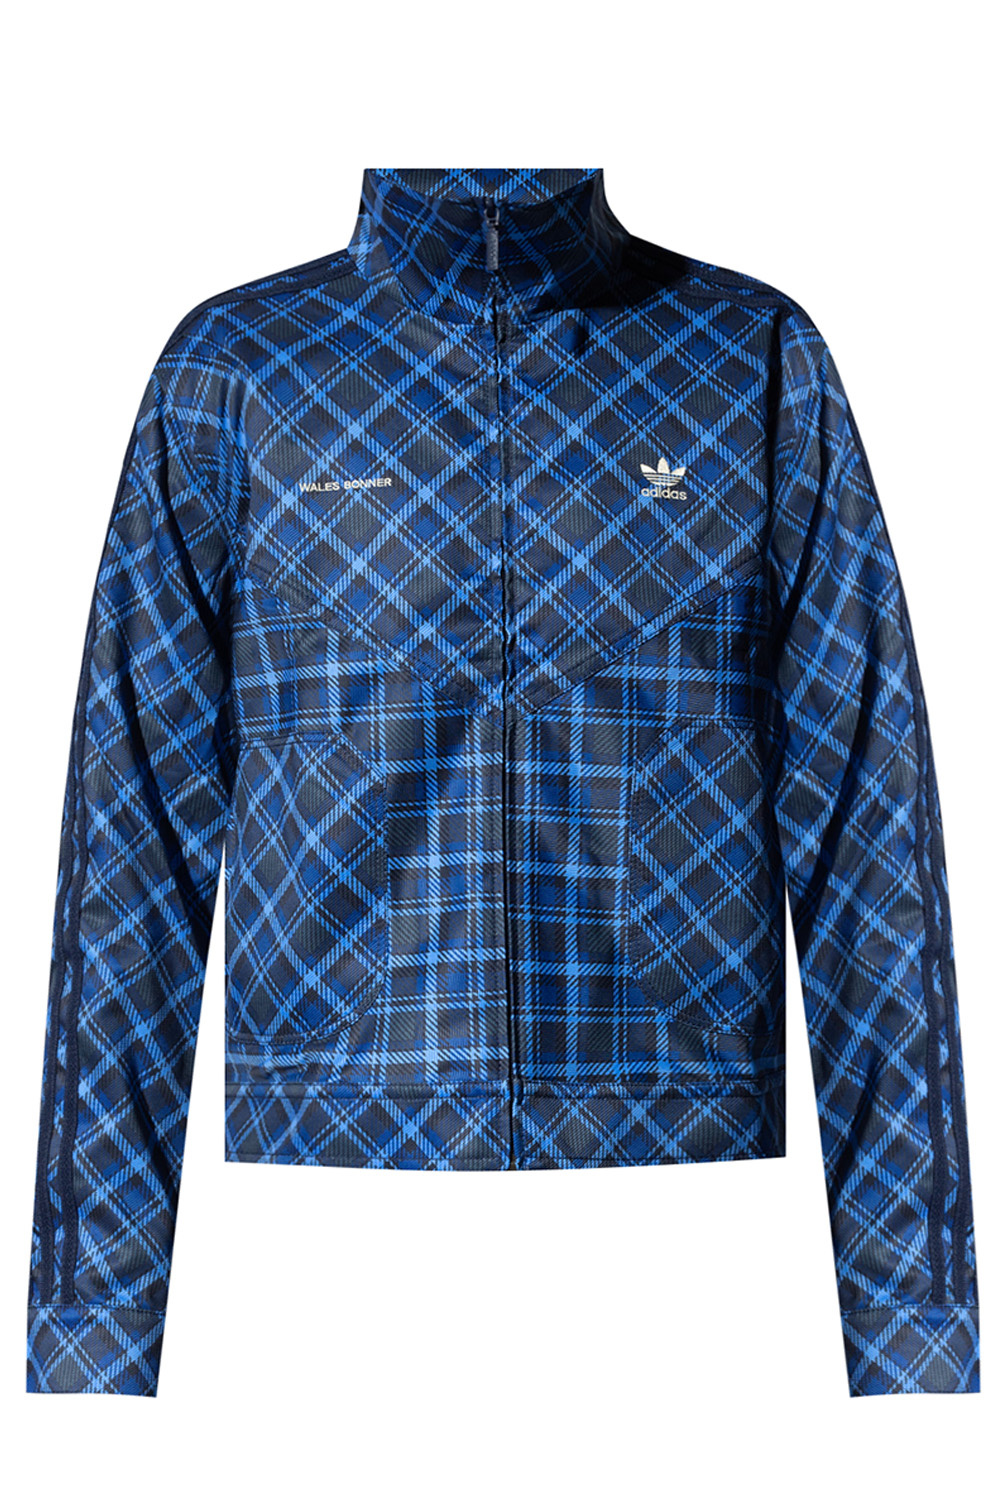 Calça Masculina Monogram - Adidas Originals - Azul - Shop2gether